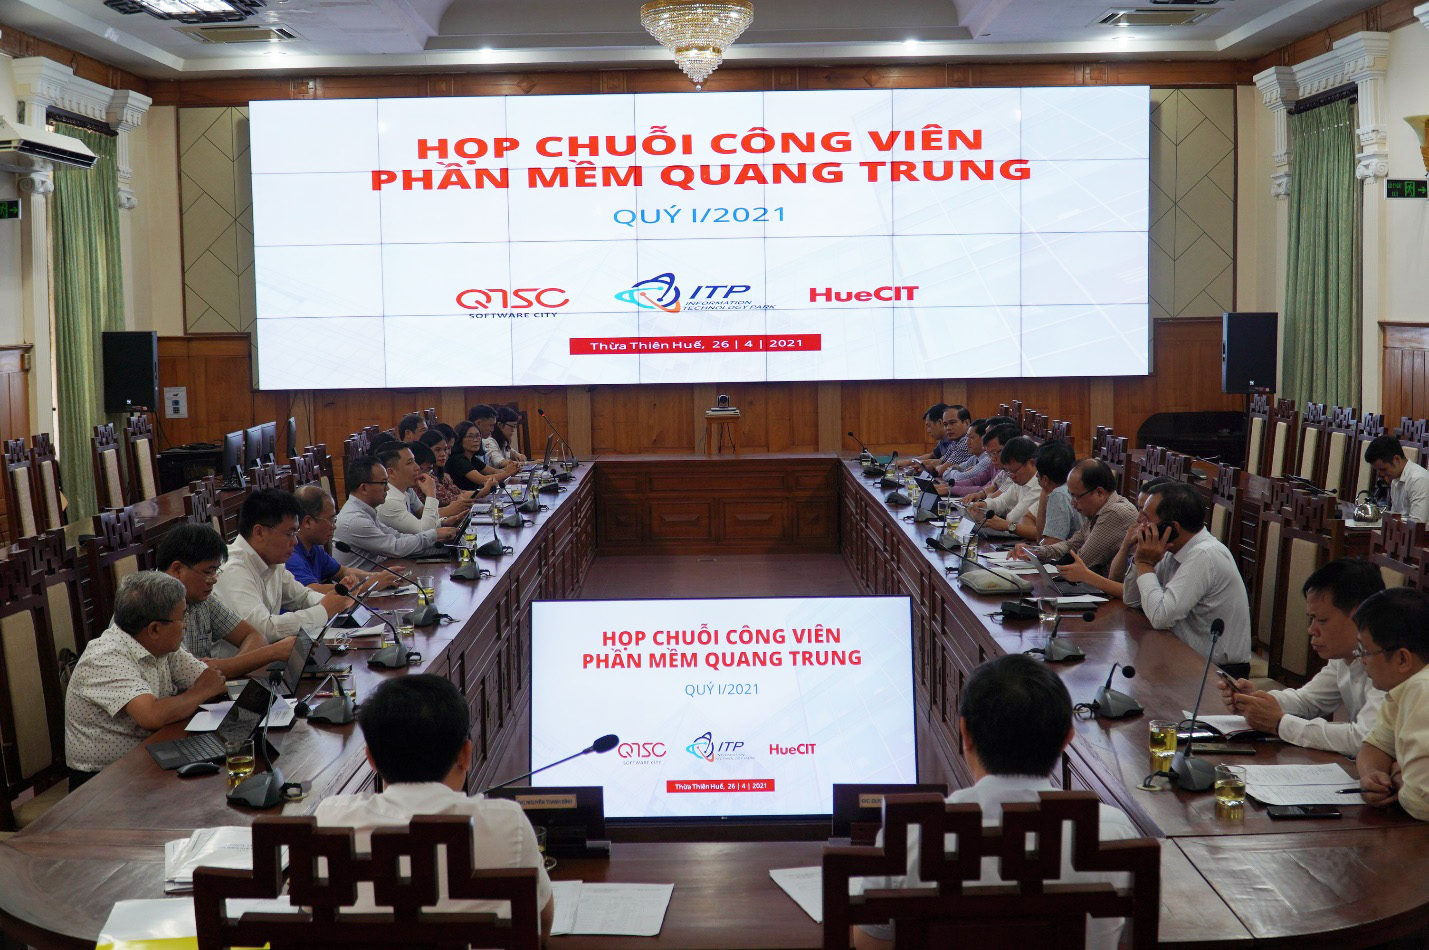 Hình 1: Toàn cảnh buổi họp Chuỗi Công viên phần mềm Quang Trung Quý 1/2021